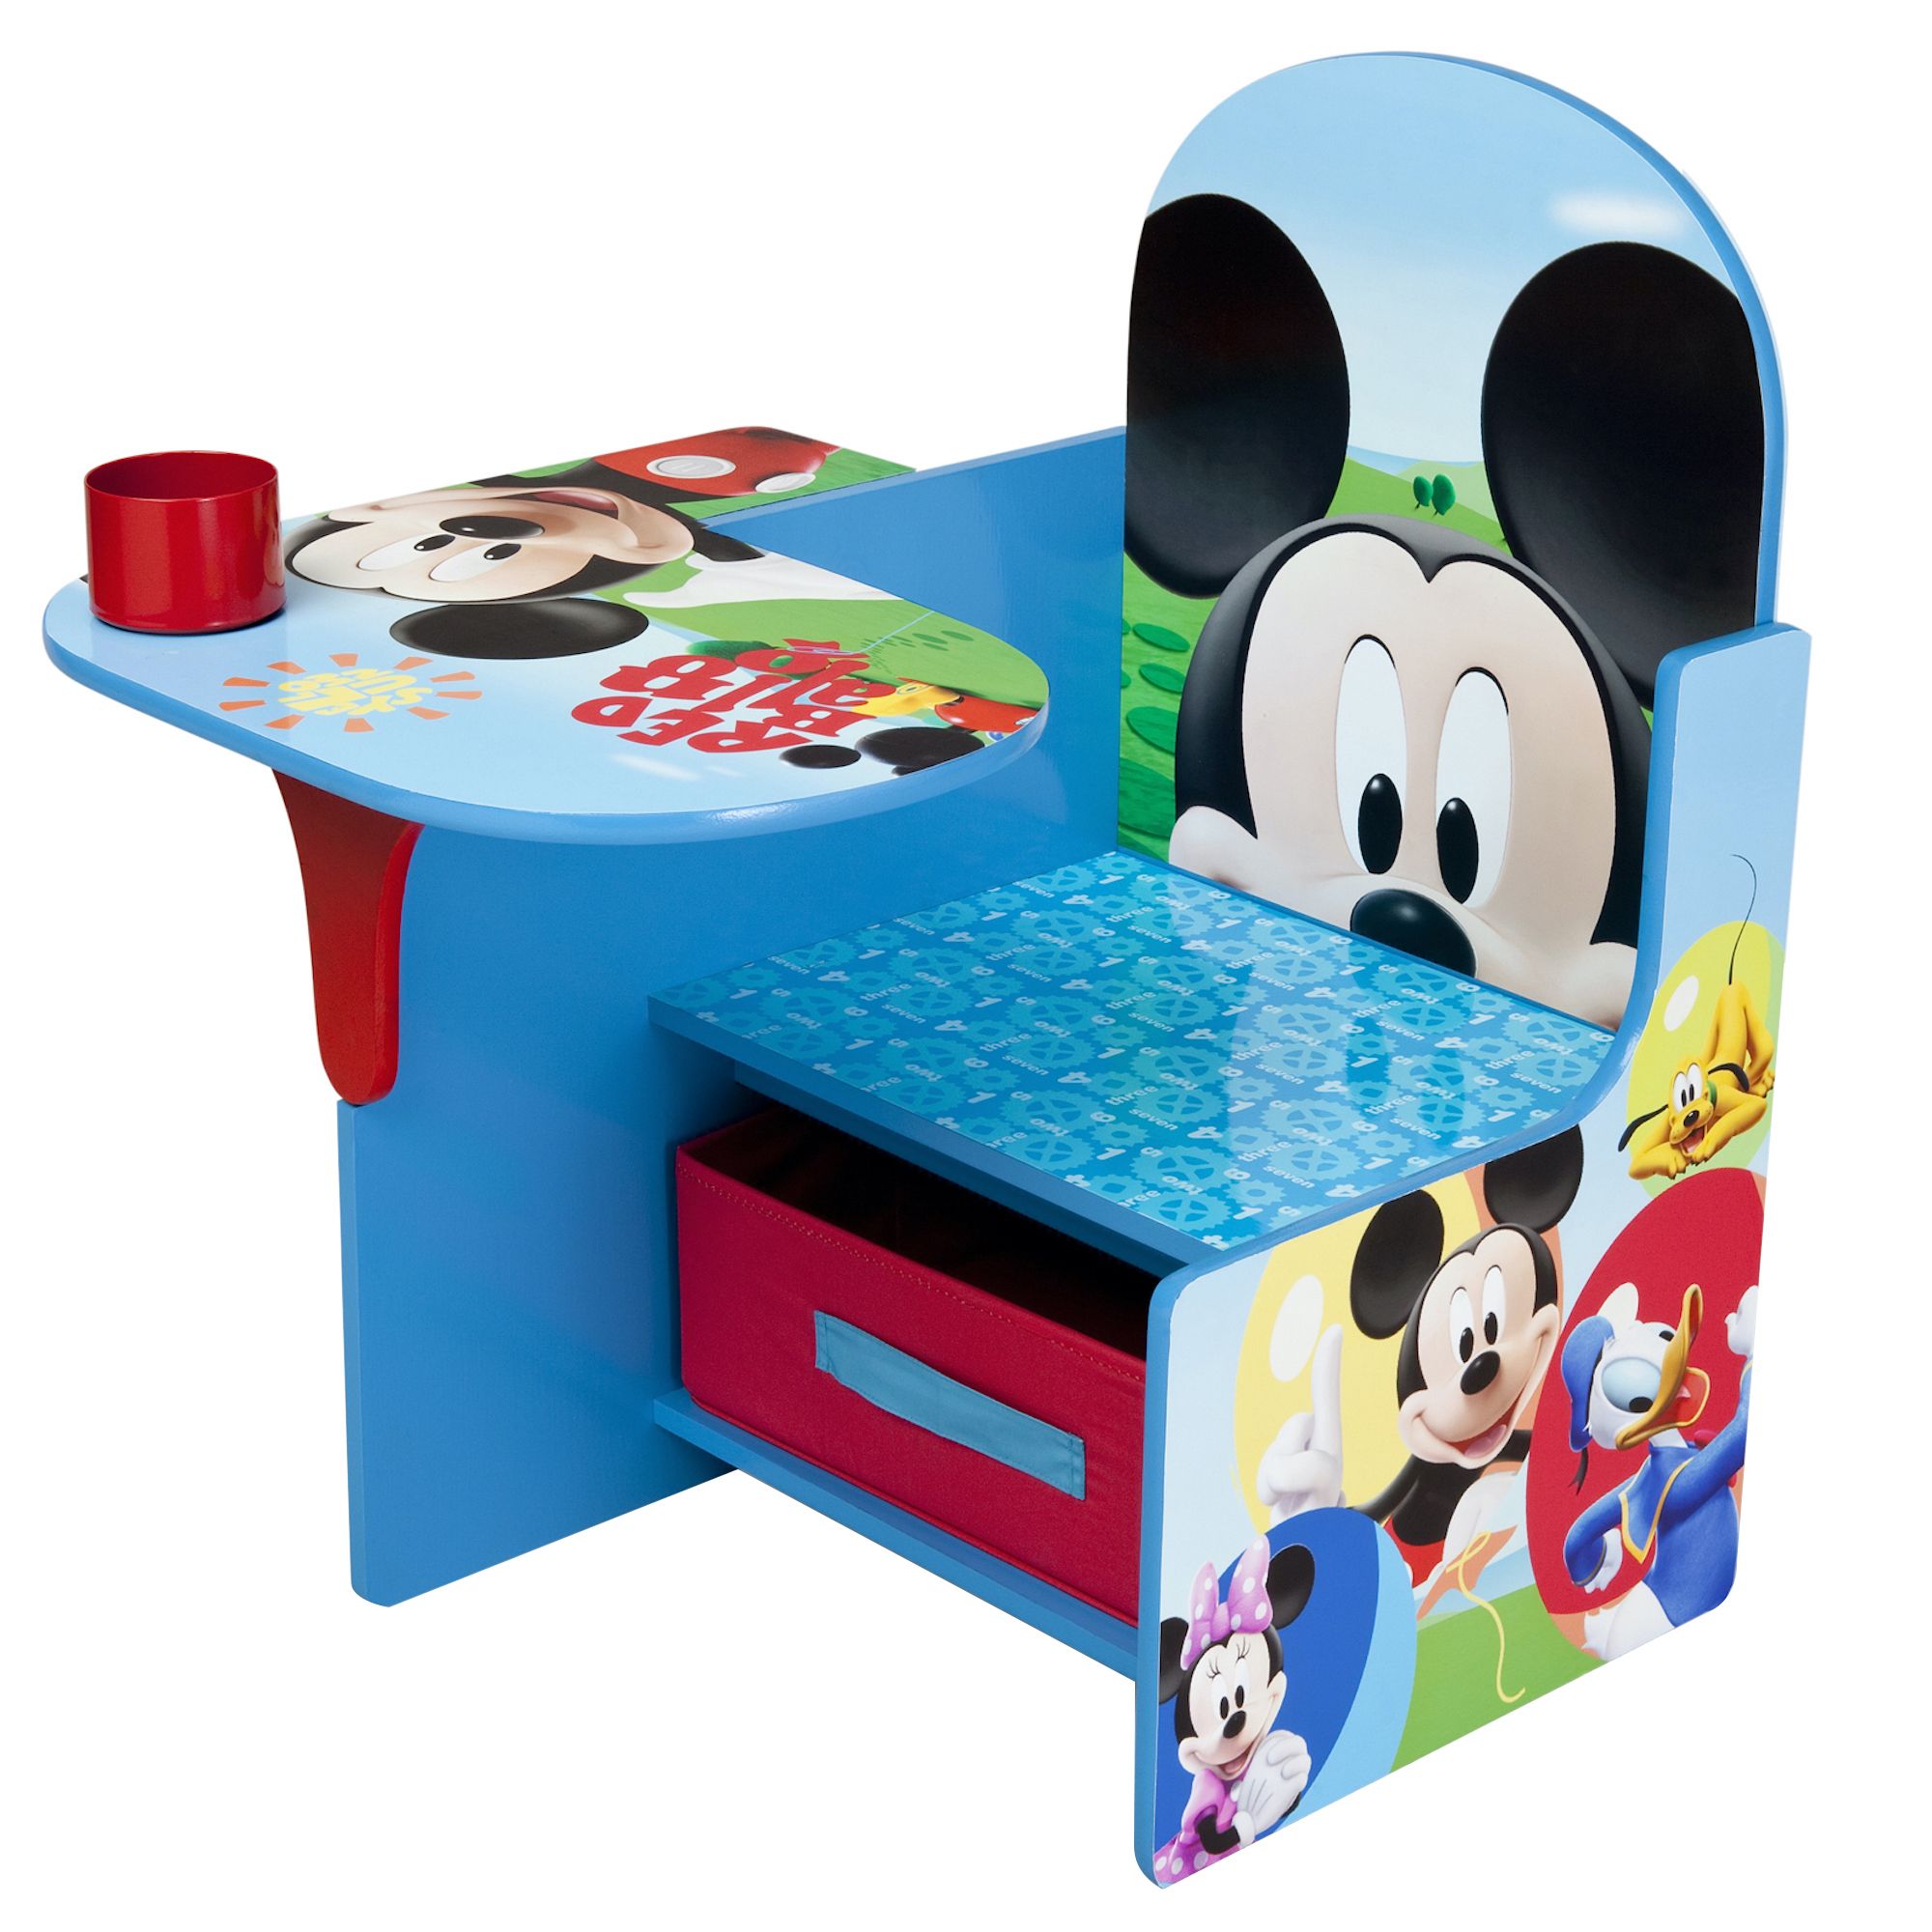 Delta Children Mickey Mouse Chair Desk with Storage Bin